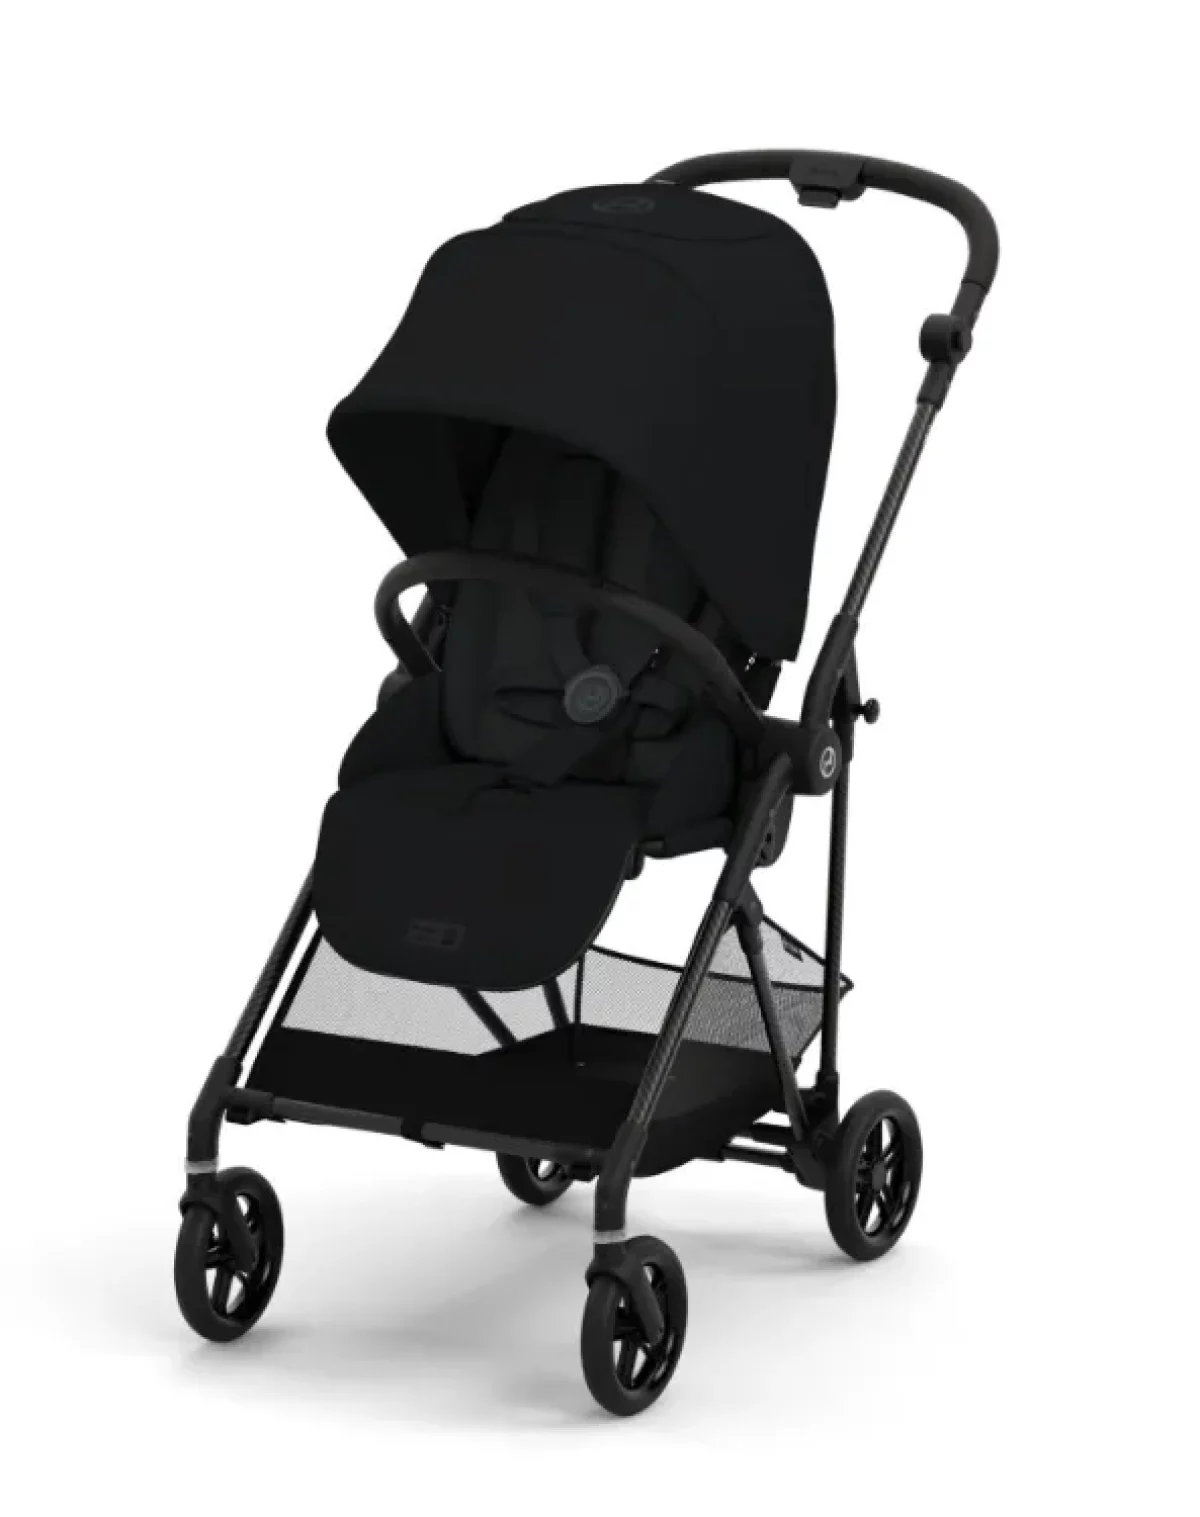 Carrito de bebé más ligero - Las sillas más plegables y compactas de 2021